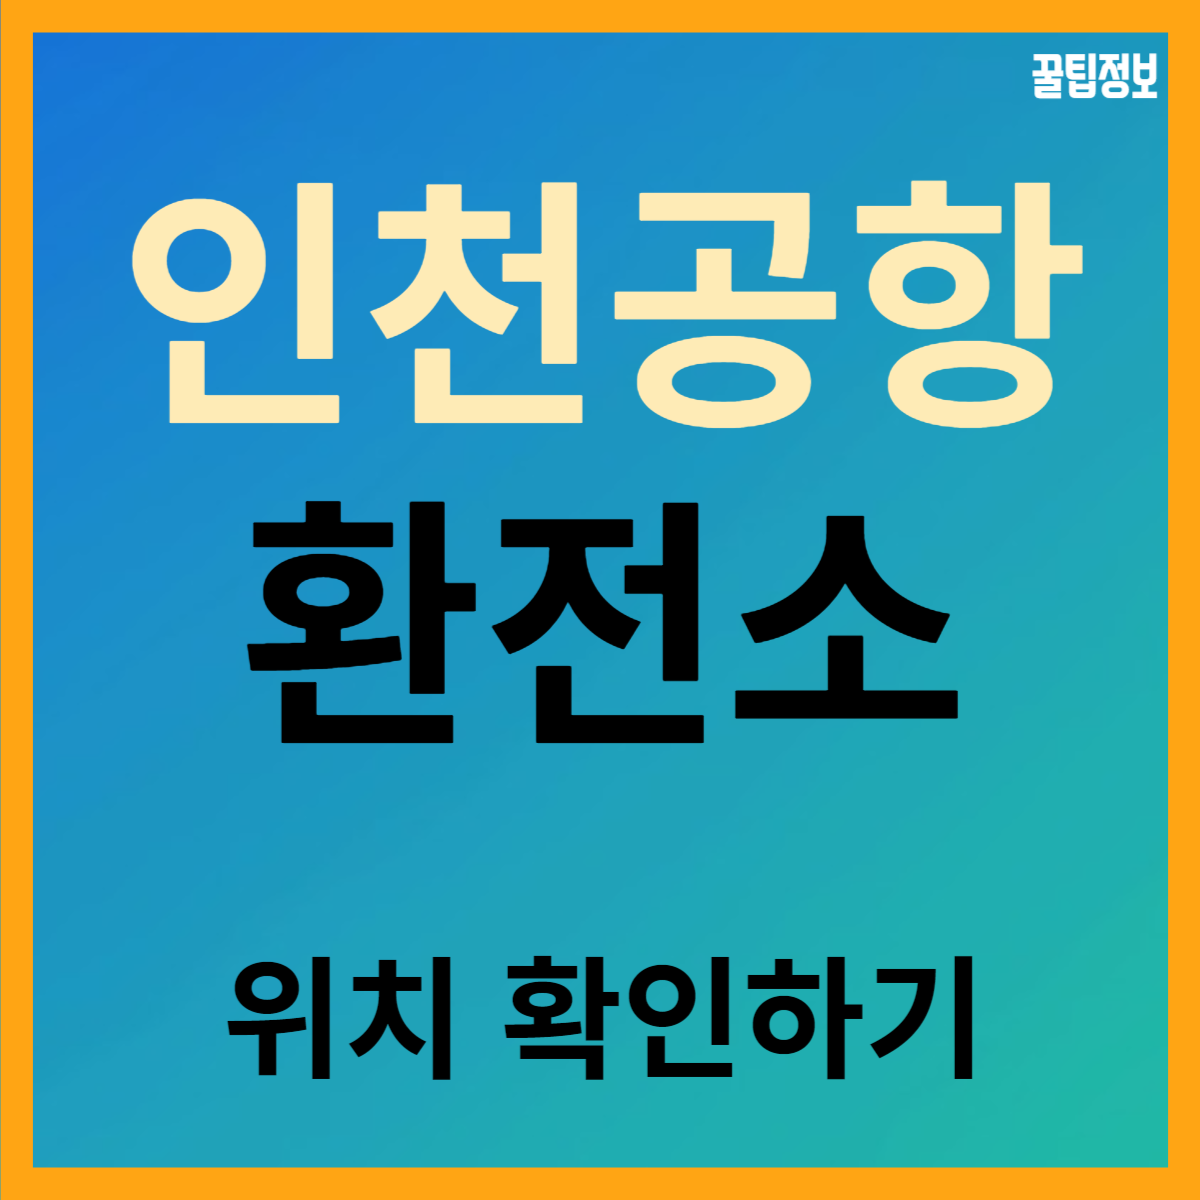 인천 국제공항 환전소 위치 확인하기